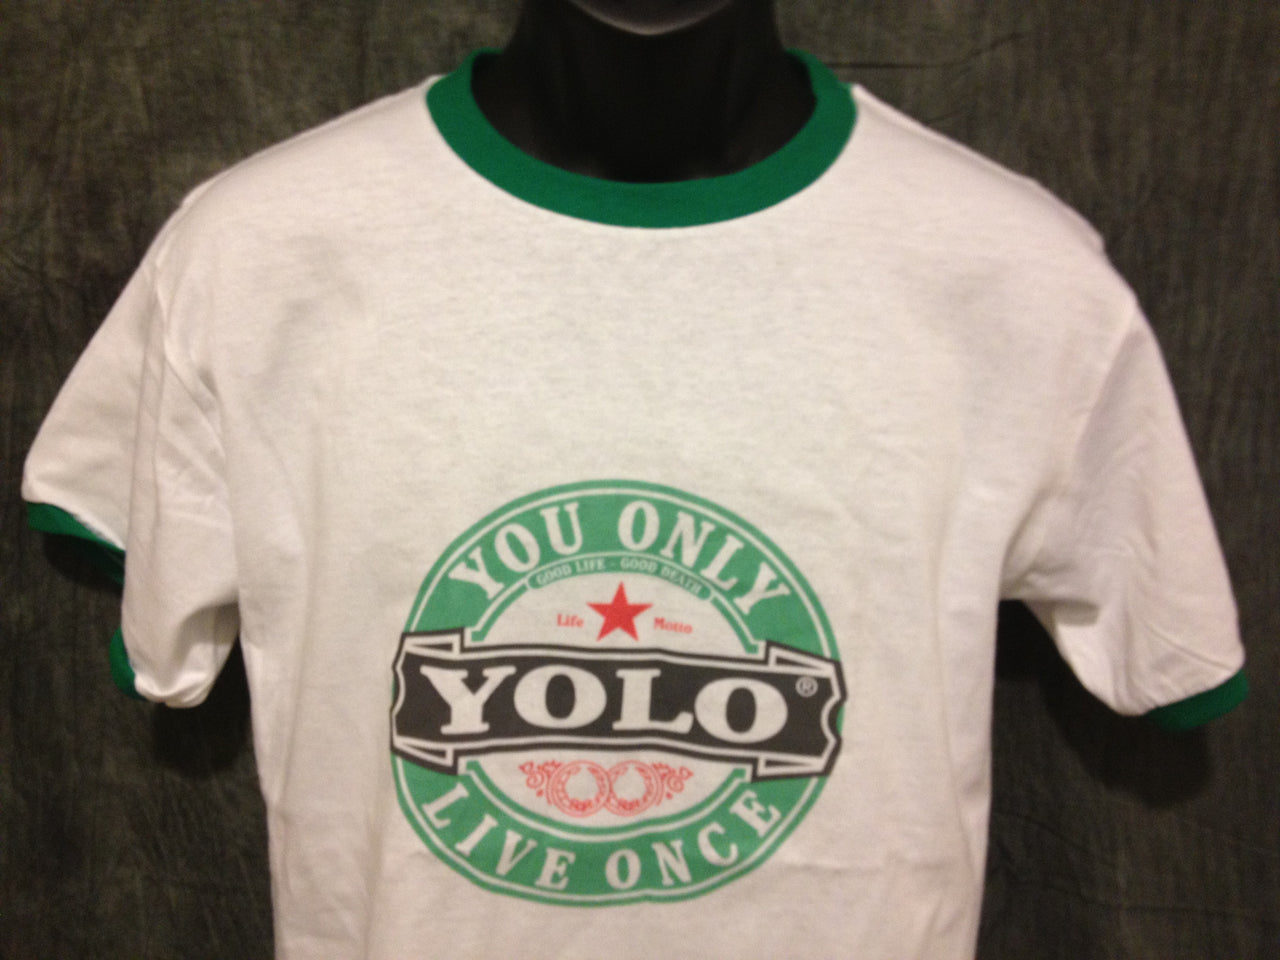 Drake Yolo Girls Ringer Tshirt: Yolo Print on Green Womens Ringer Tshirt - TshirtNow.net - 1